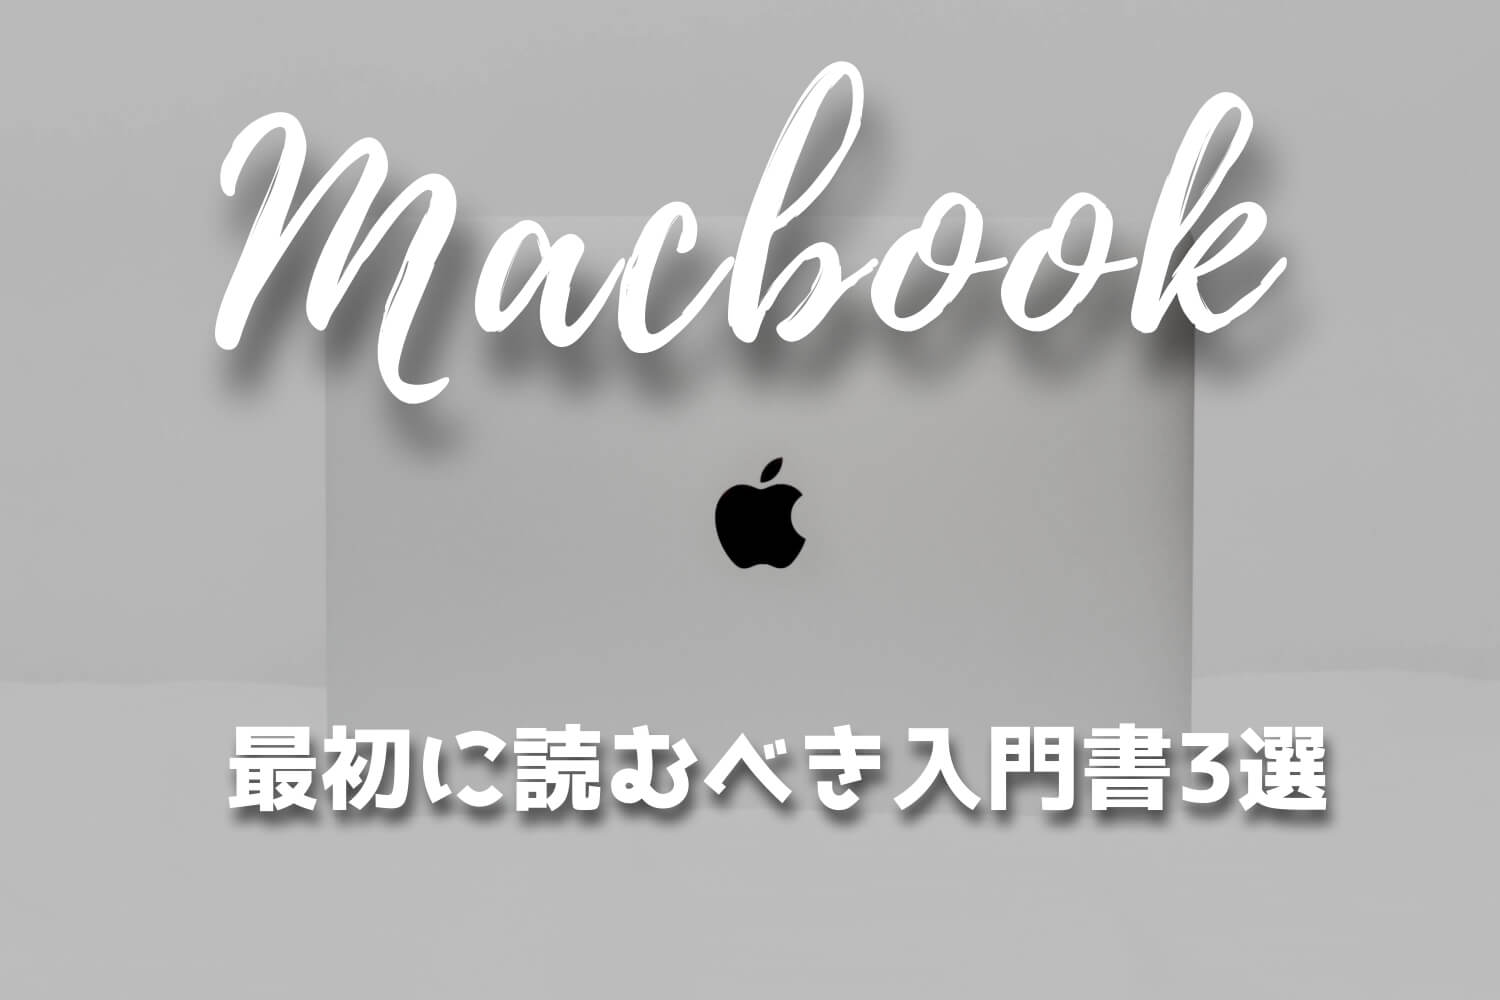 macbook-pro-how-to-book-beginner